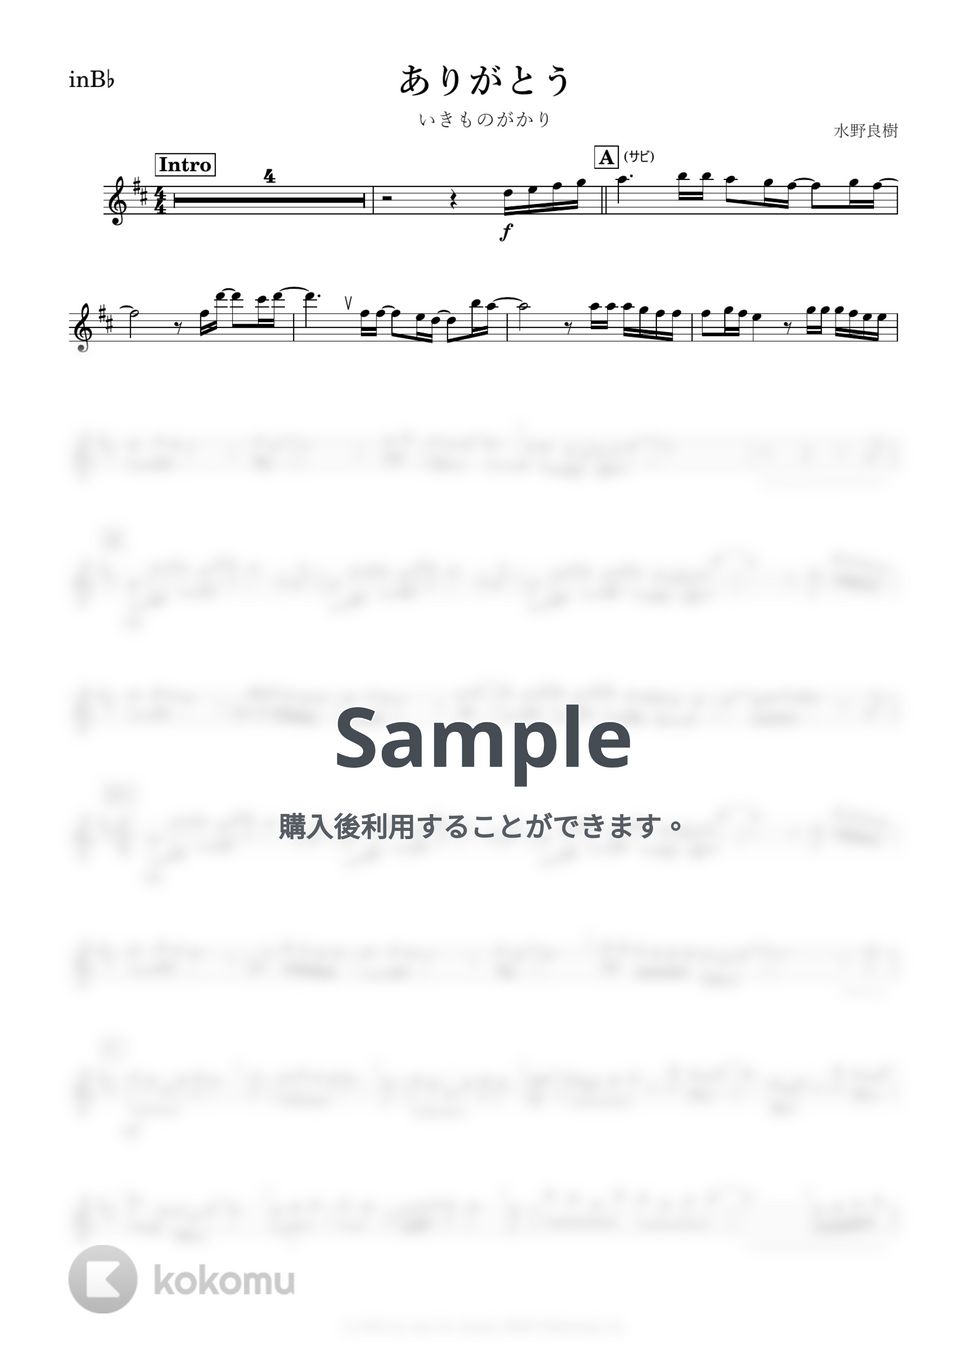 いきものがかり - ありがとう (B♭) by kanamusic